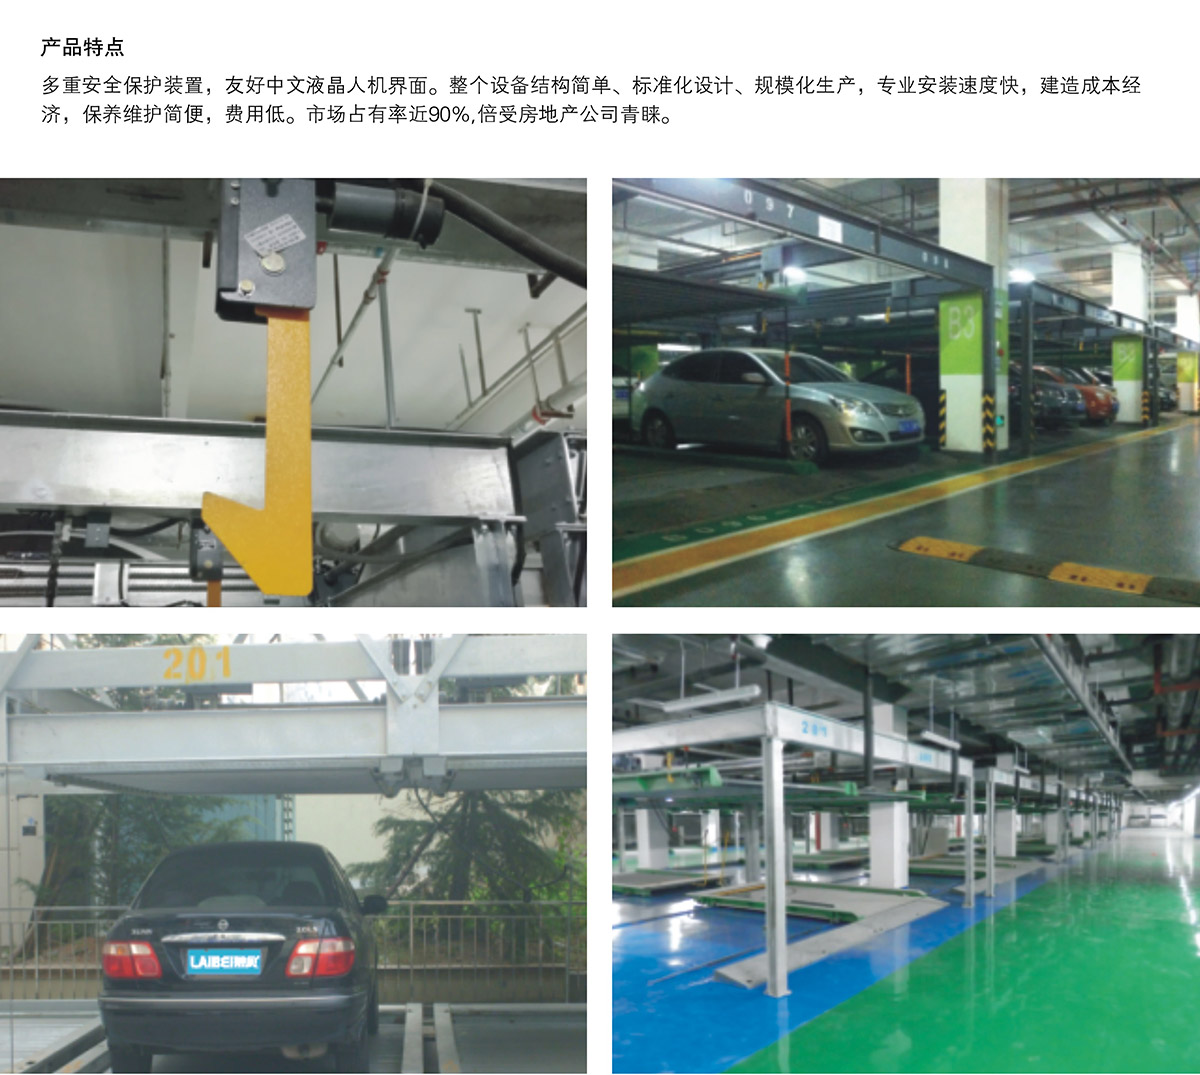 机械车位单列PSH2二层升降横移机械停车设备产品特点.jpg